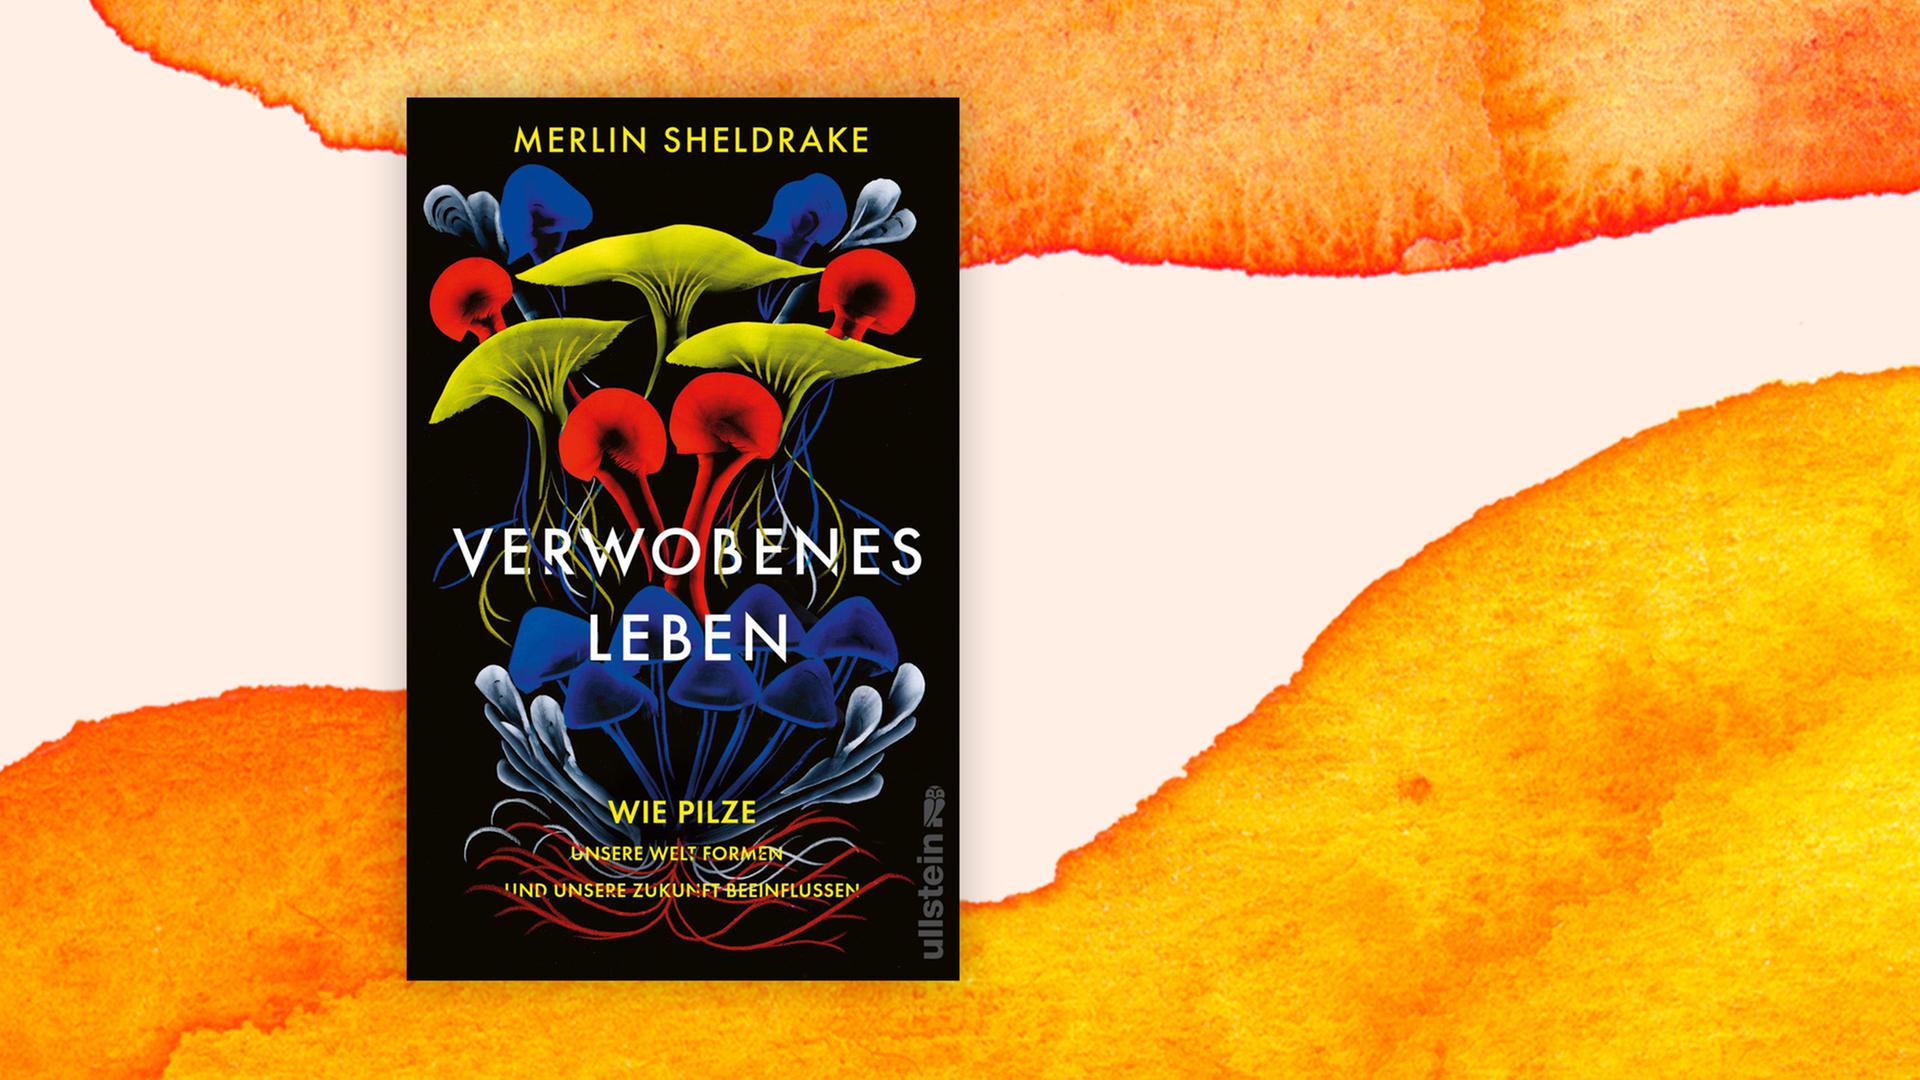 Buchcover zu Merlin Sheldrake: "Verwobenes Leben" zeigt Pilze